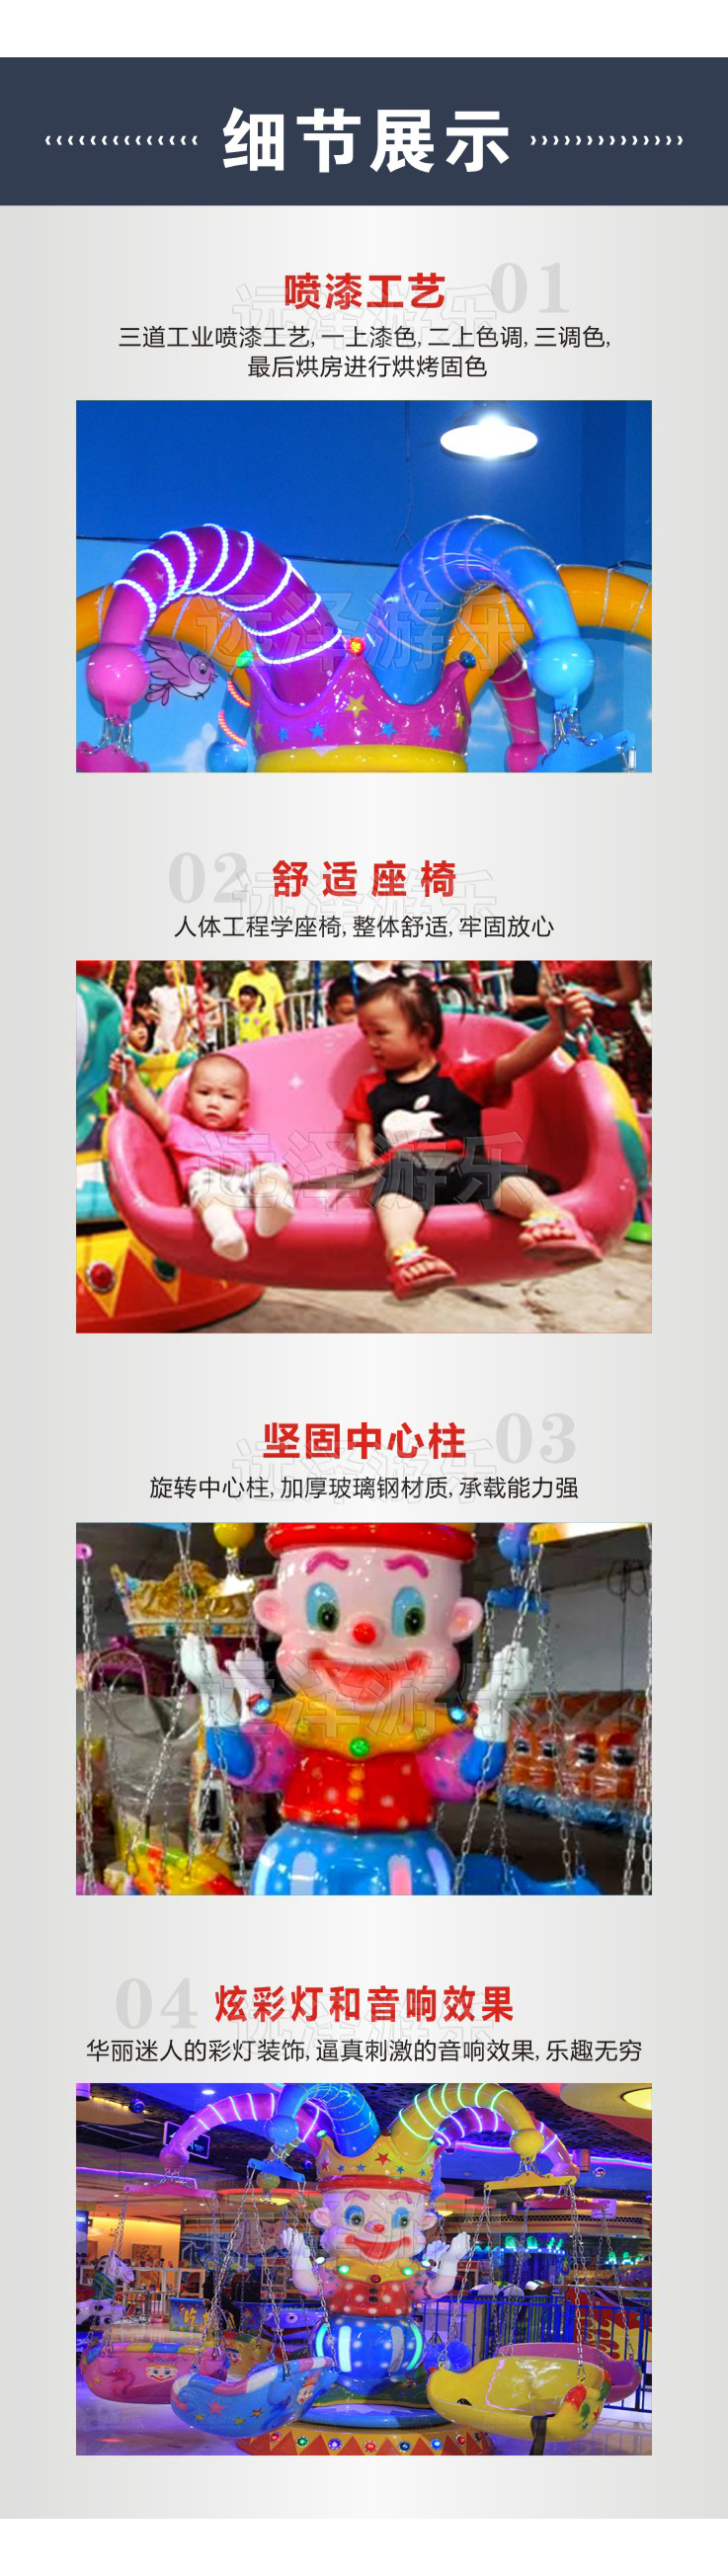 儿童欢乐城小丑飞椅 室内游乐设备 豪华马戏团飞椅 5